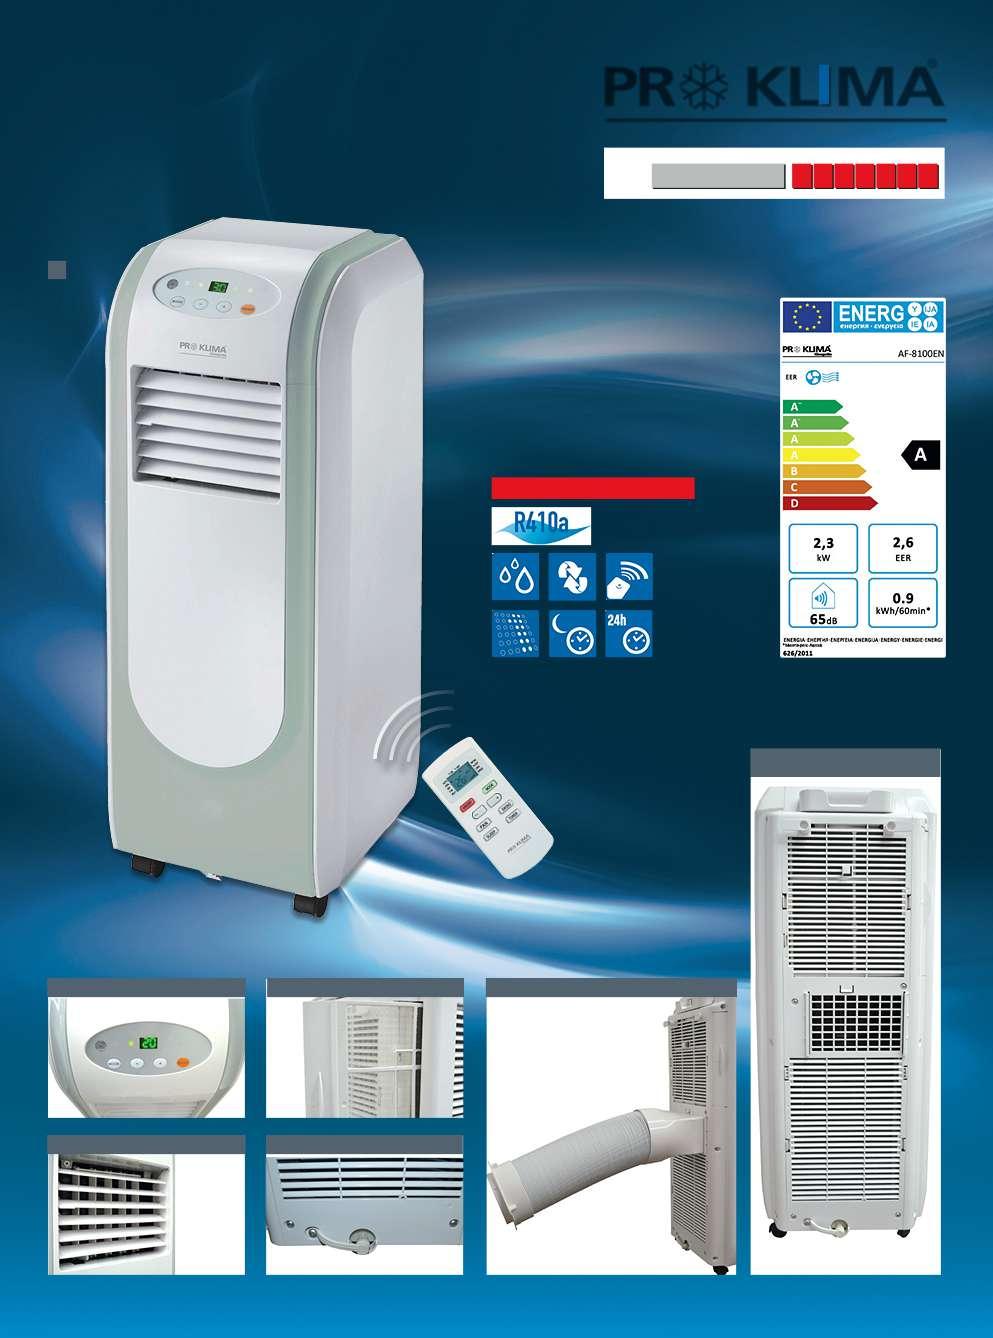 Mobilní klimatizace 1 1. Mobilní klimatizace PROKLIMA AF-8100EN* 8000 BTU, výkon chlazení 2,3 kw, funkce odvlhčování, ventilace, odložené zapnutí a vypnutí, vč.